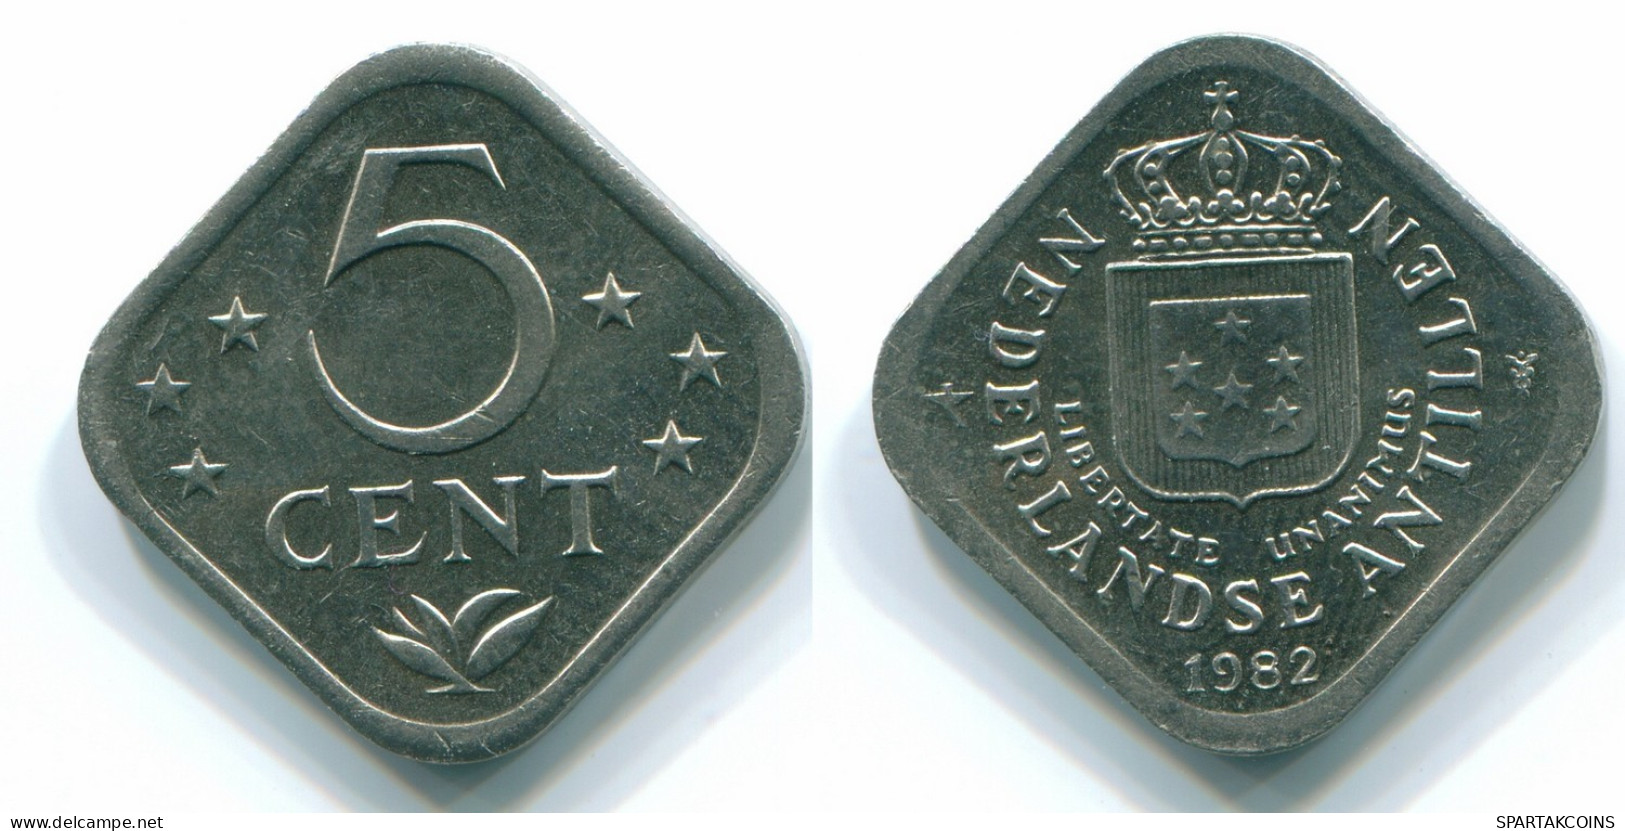 5 CENTS 1982 NETHERLANDS ANTILLES Nickel Colonial Coin #S12351.U.A - Niederländische Antillen